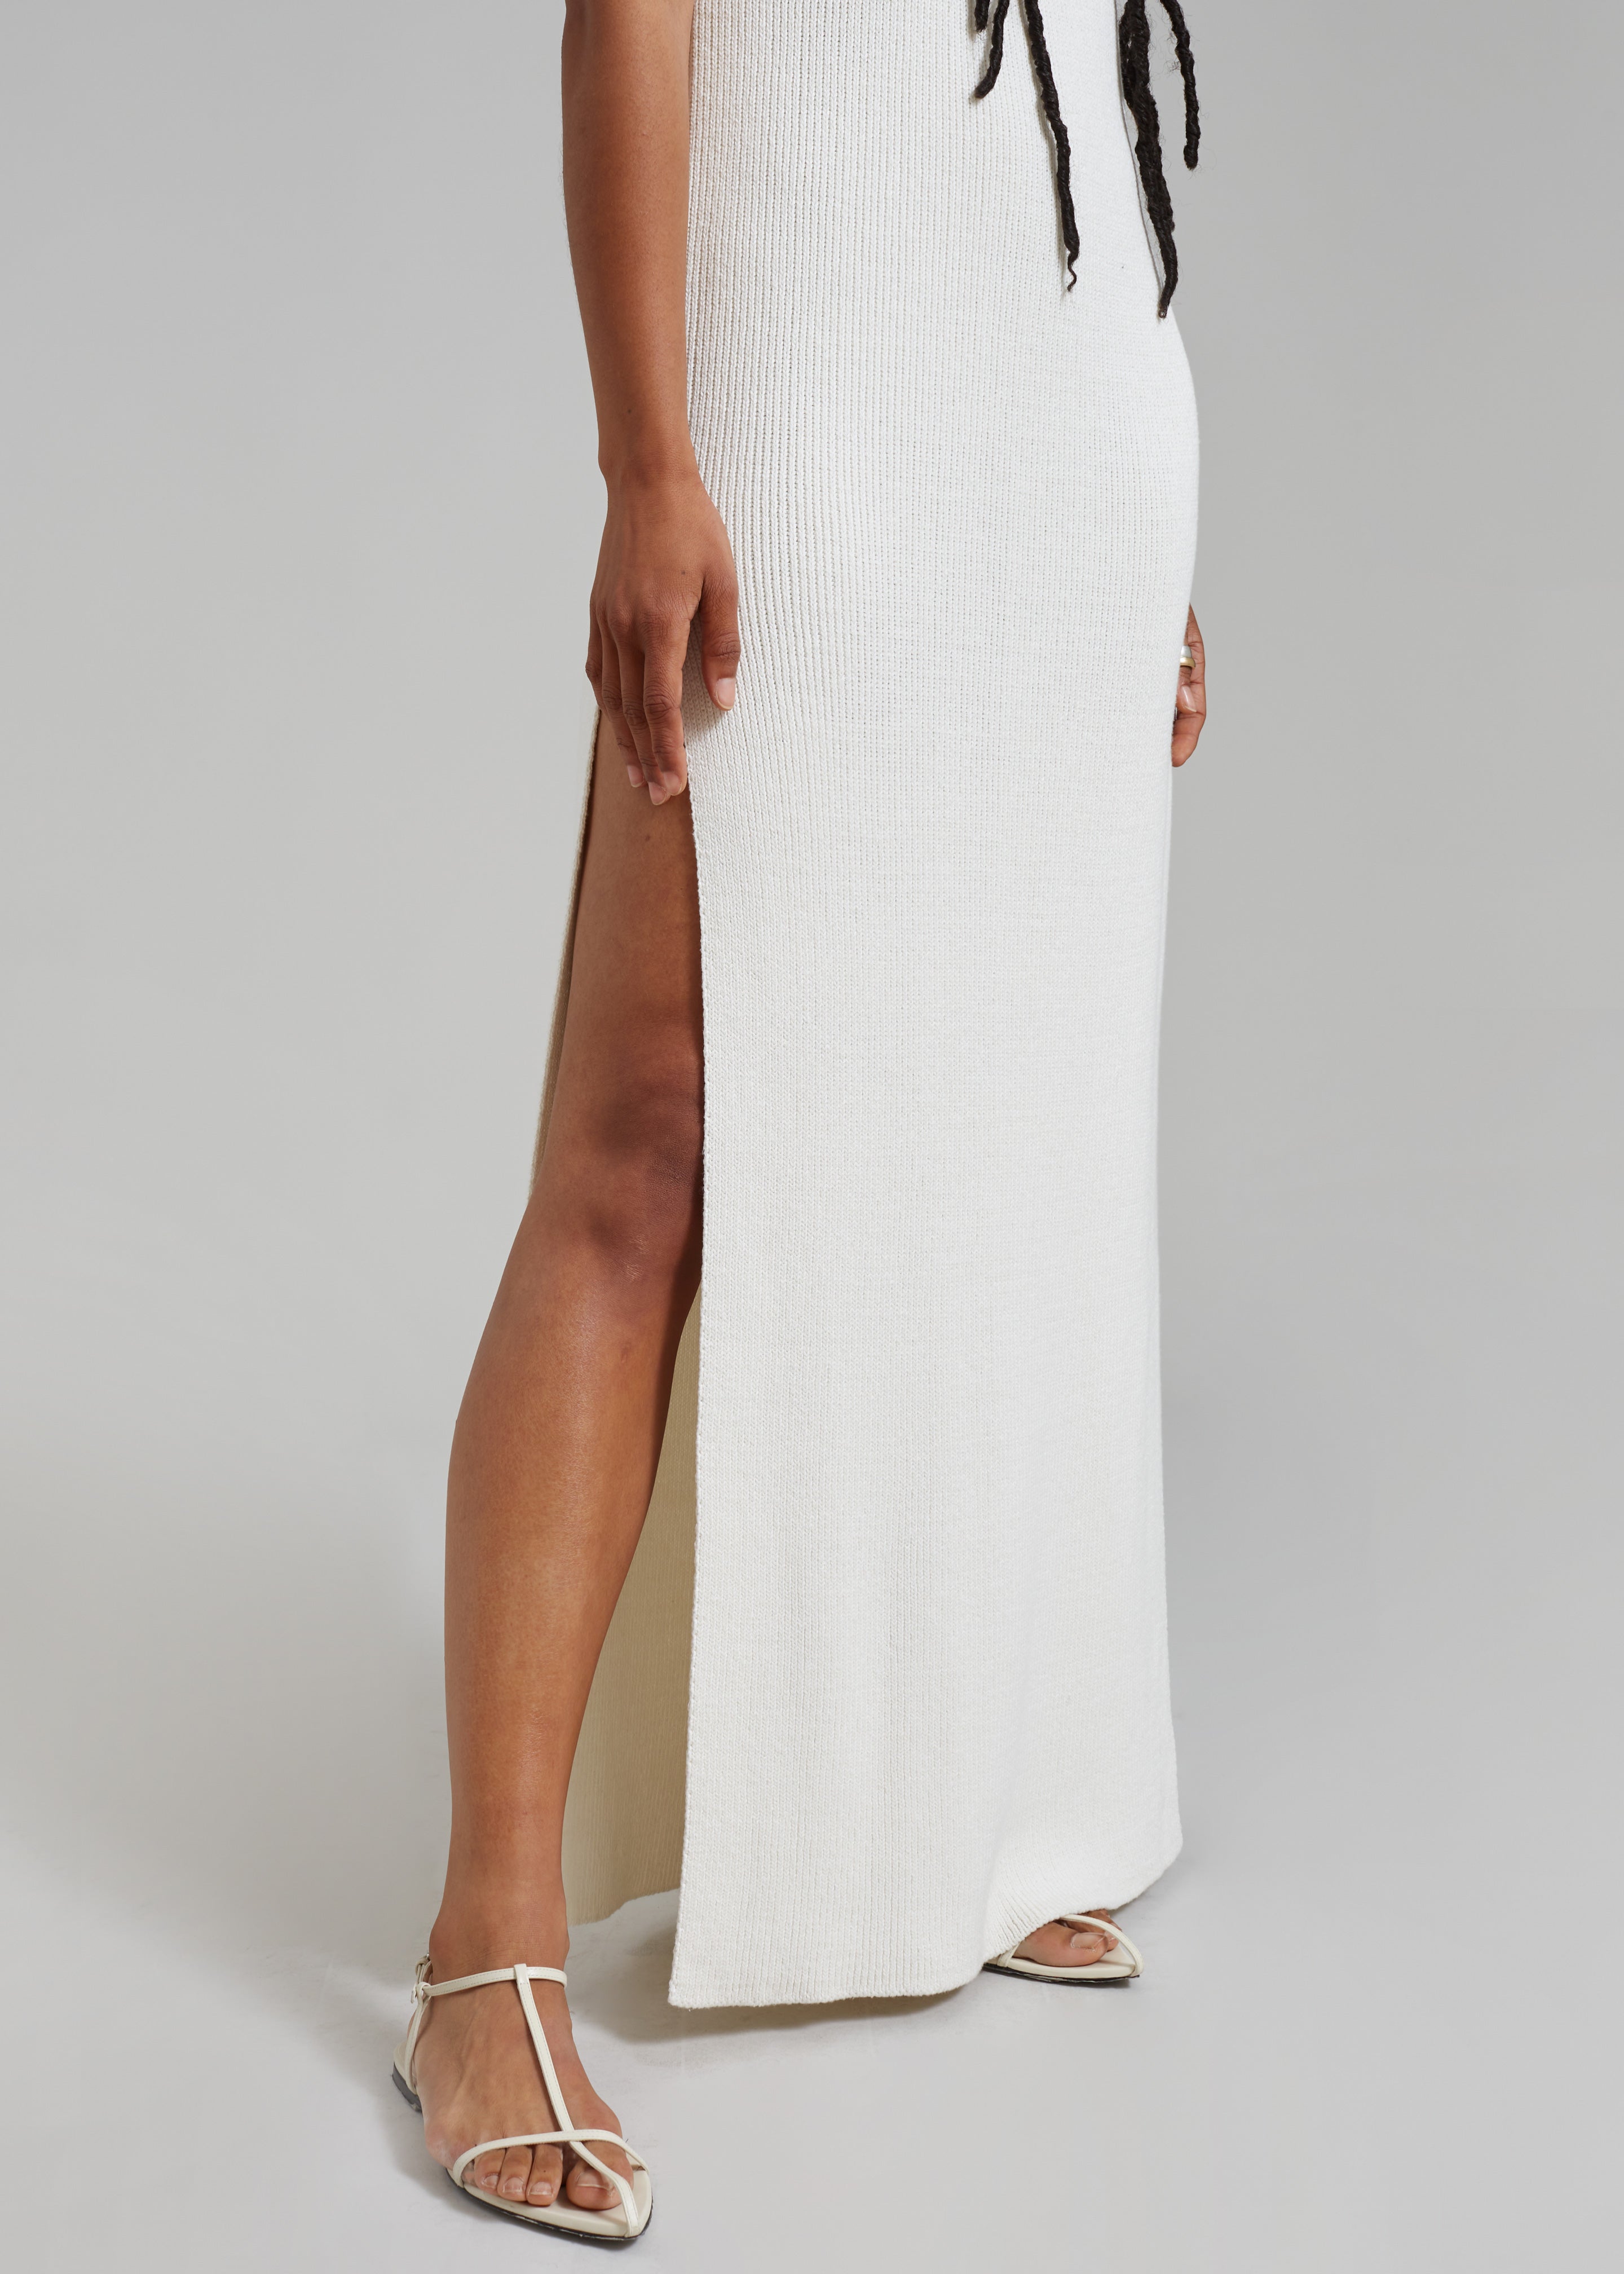 Wren Sleeveless Knit Dress - White - 7